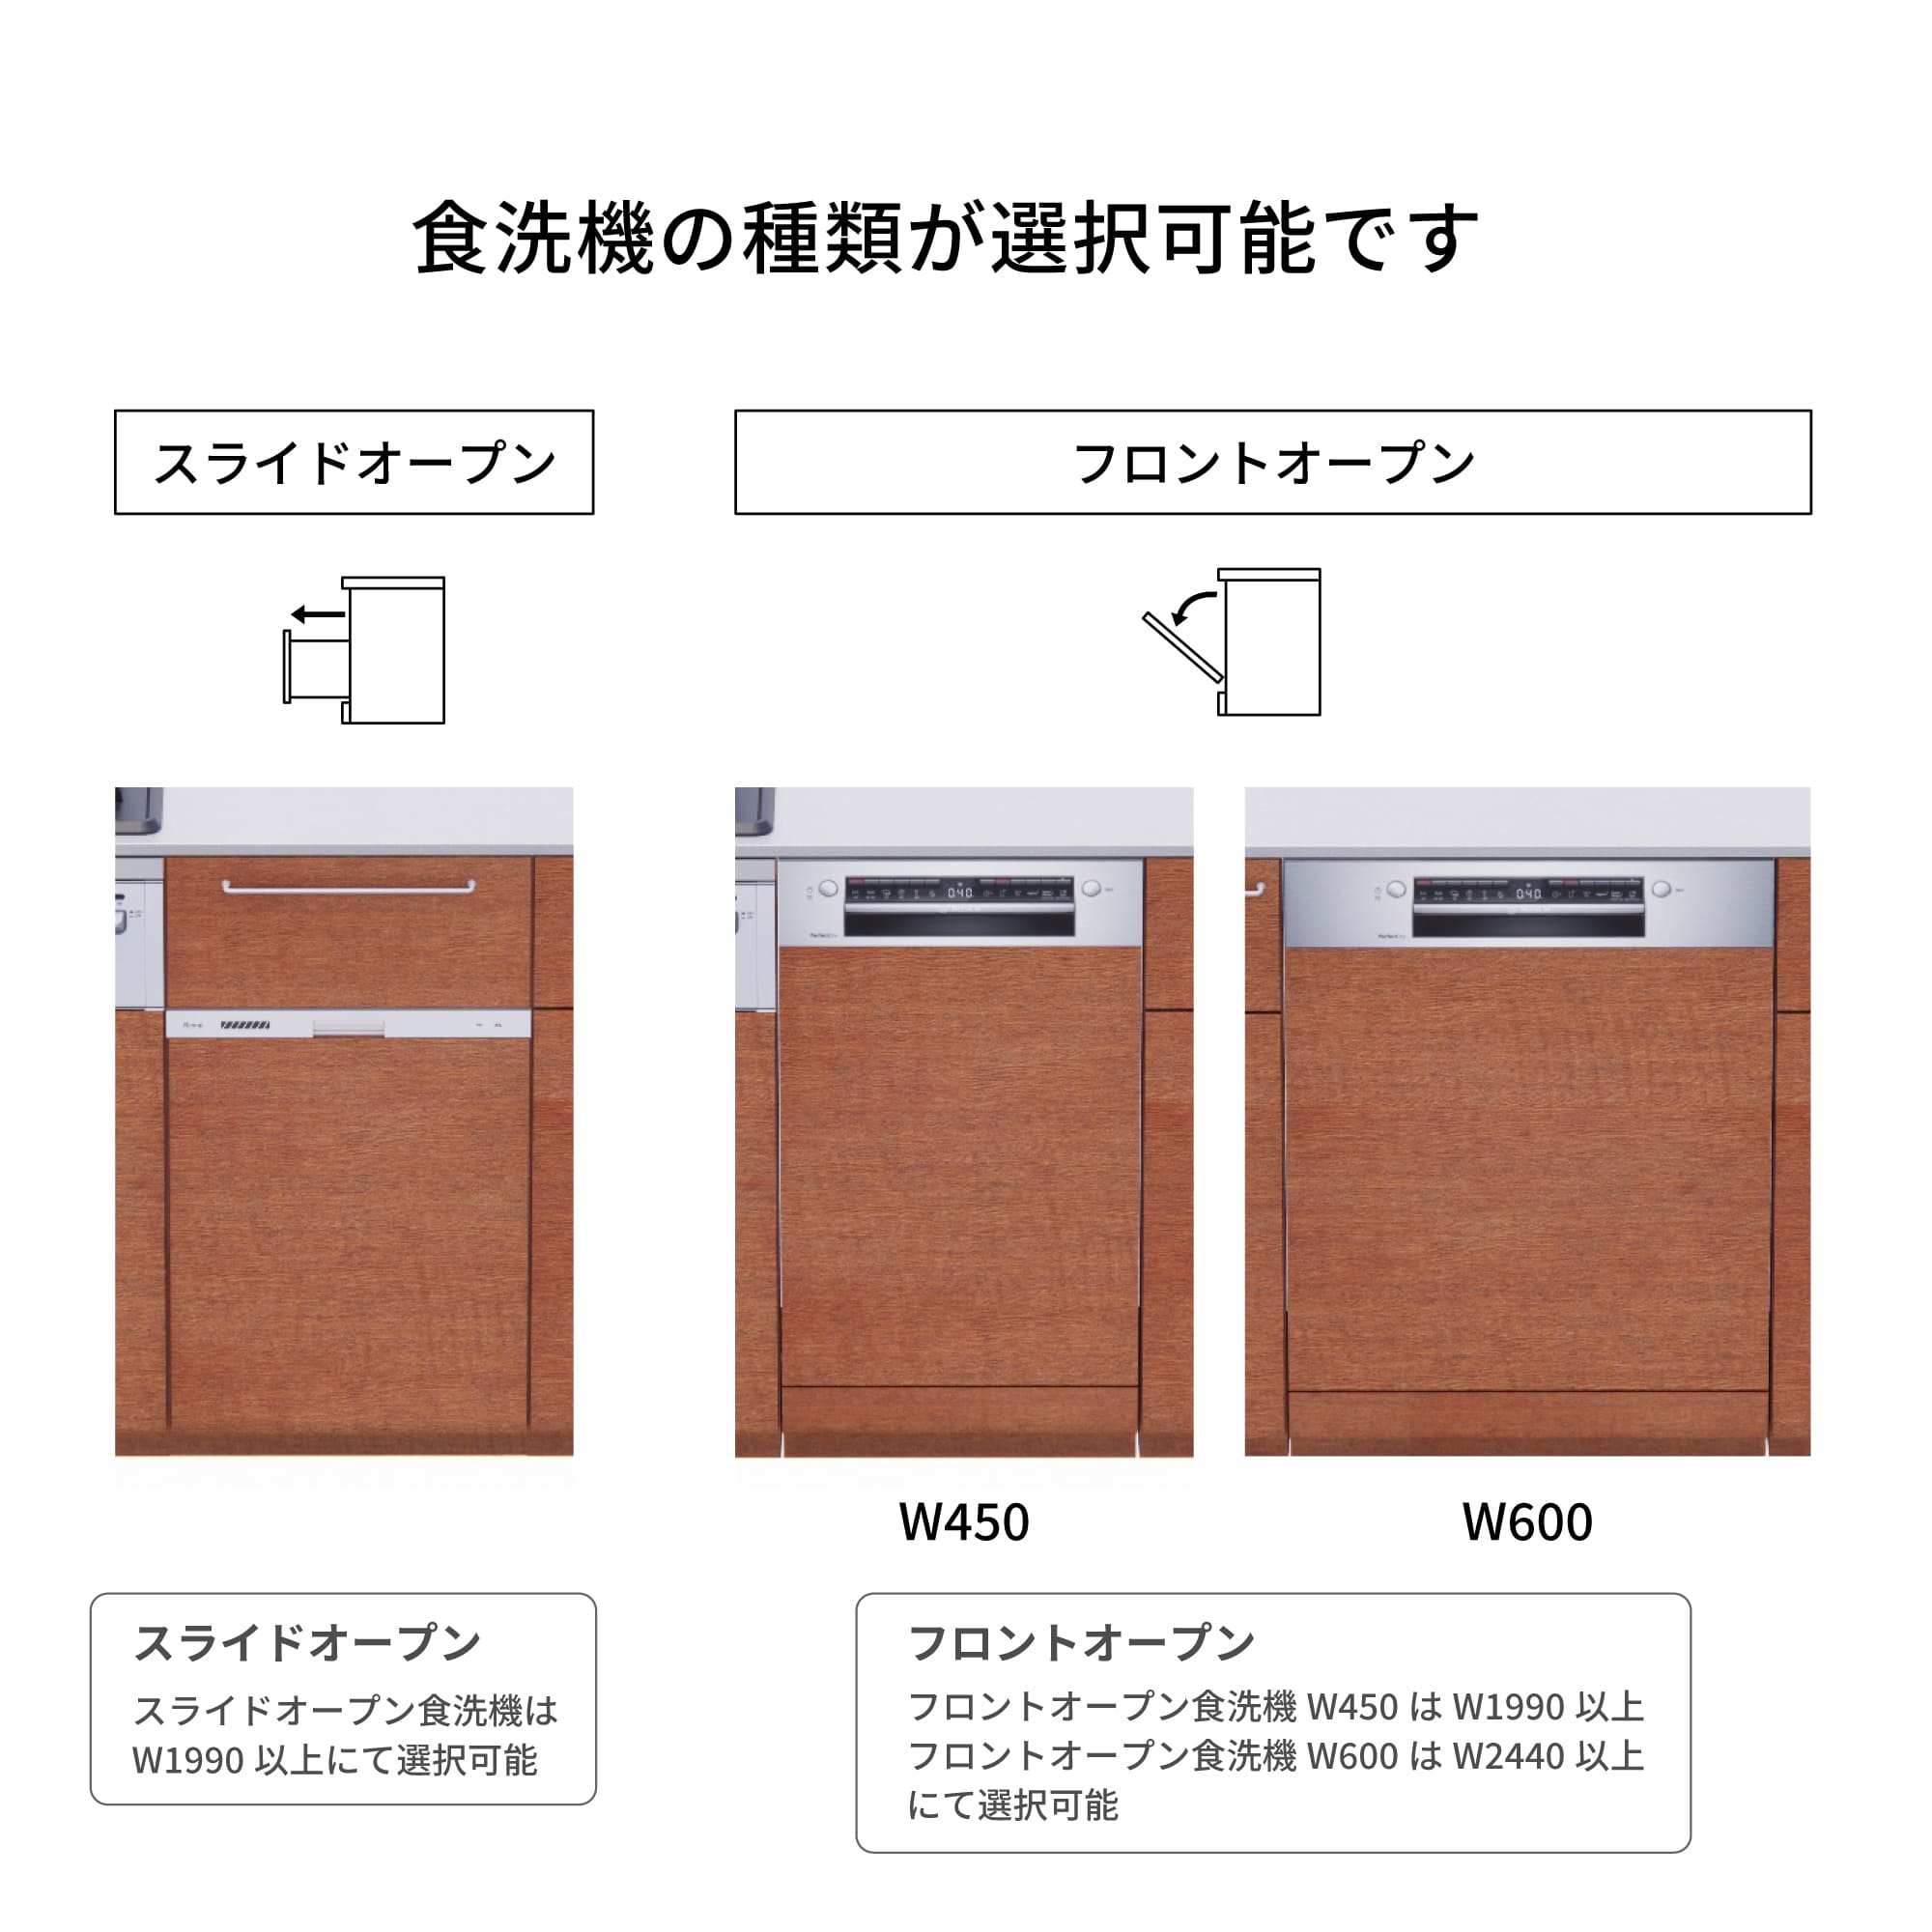 木製システムキッチン 対面型 W2140～2290・コンロあり / オーブンあり / 食洗機あり KB-KC022-40-G183 食洗機が選択できます